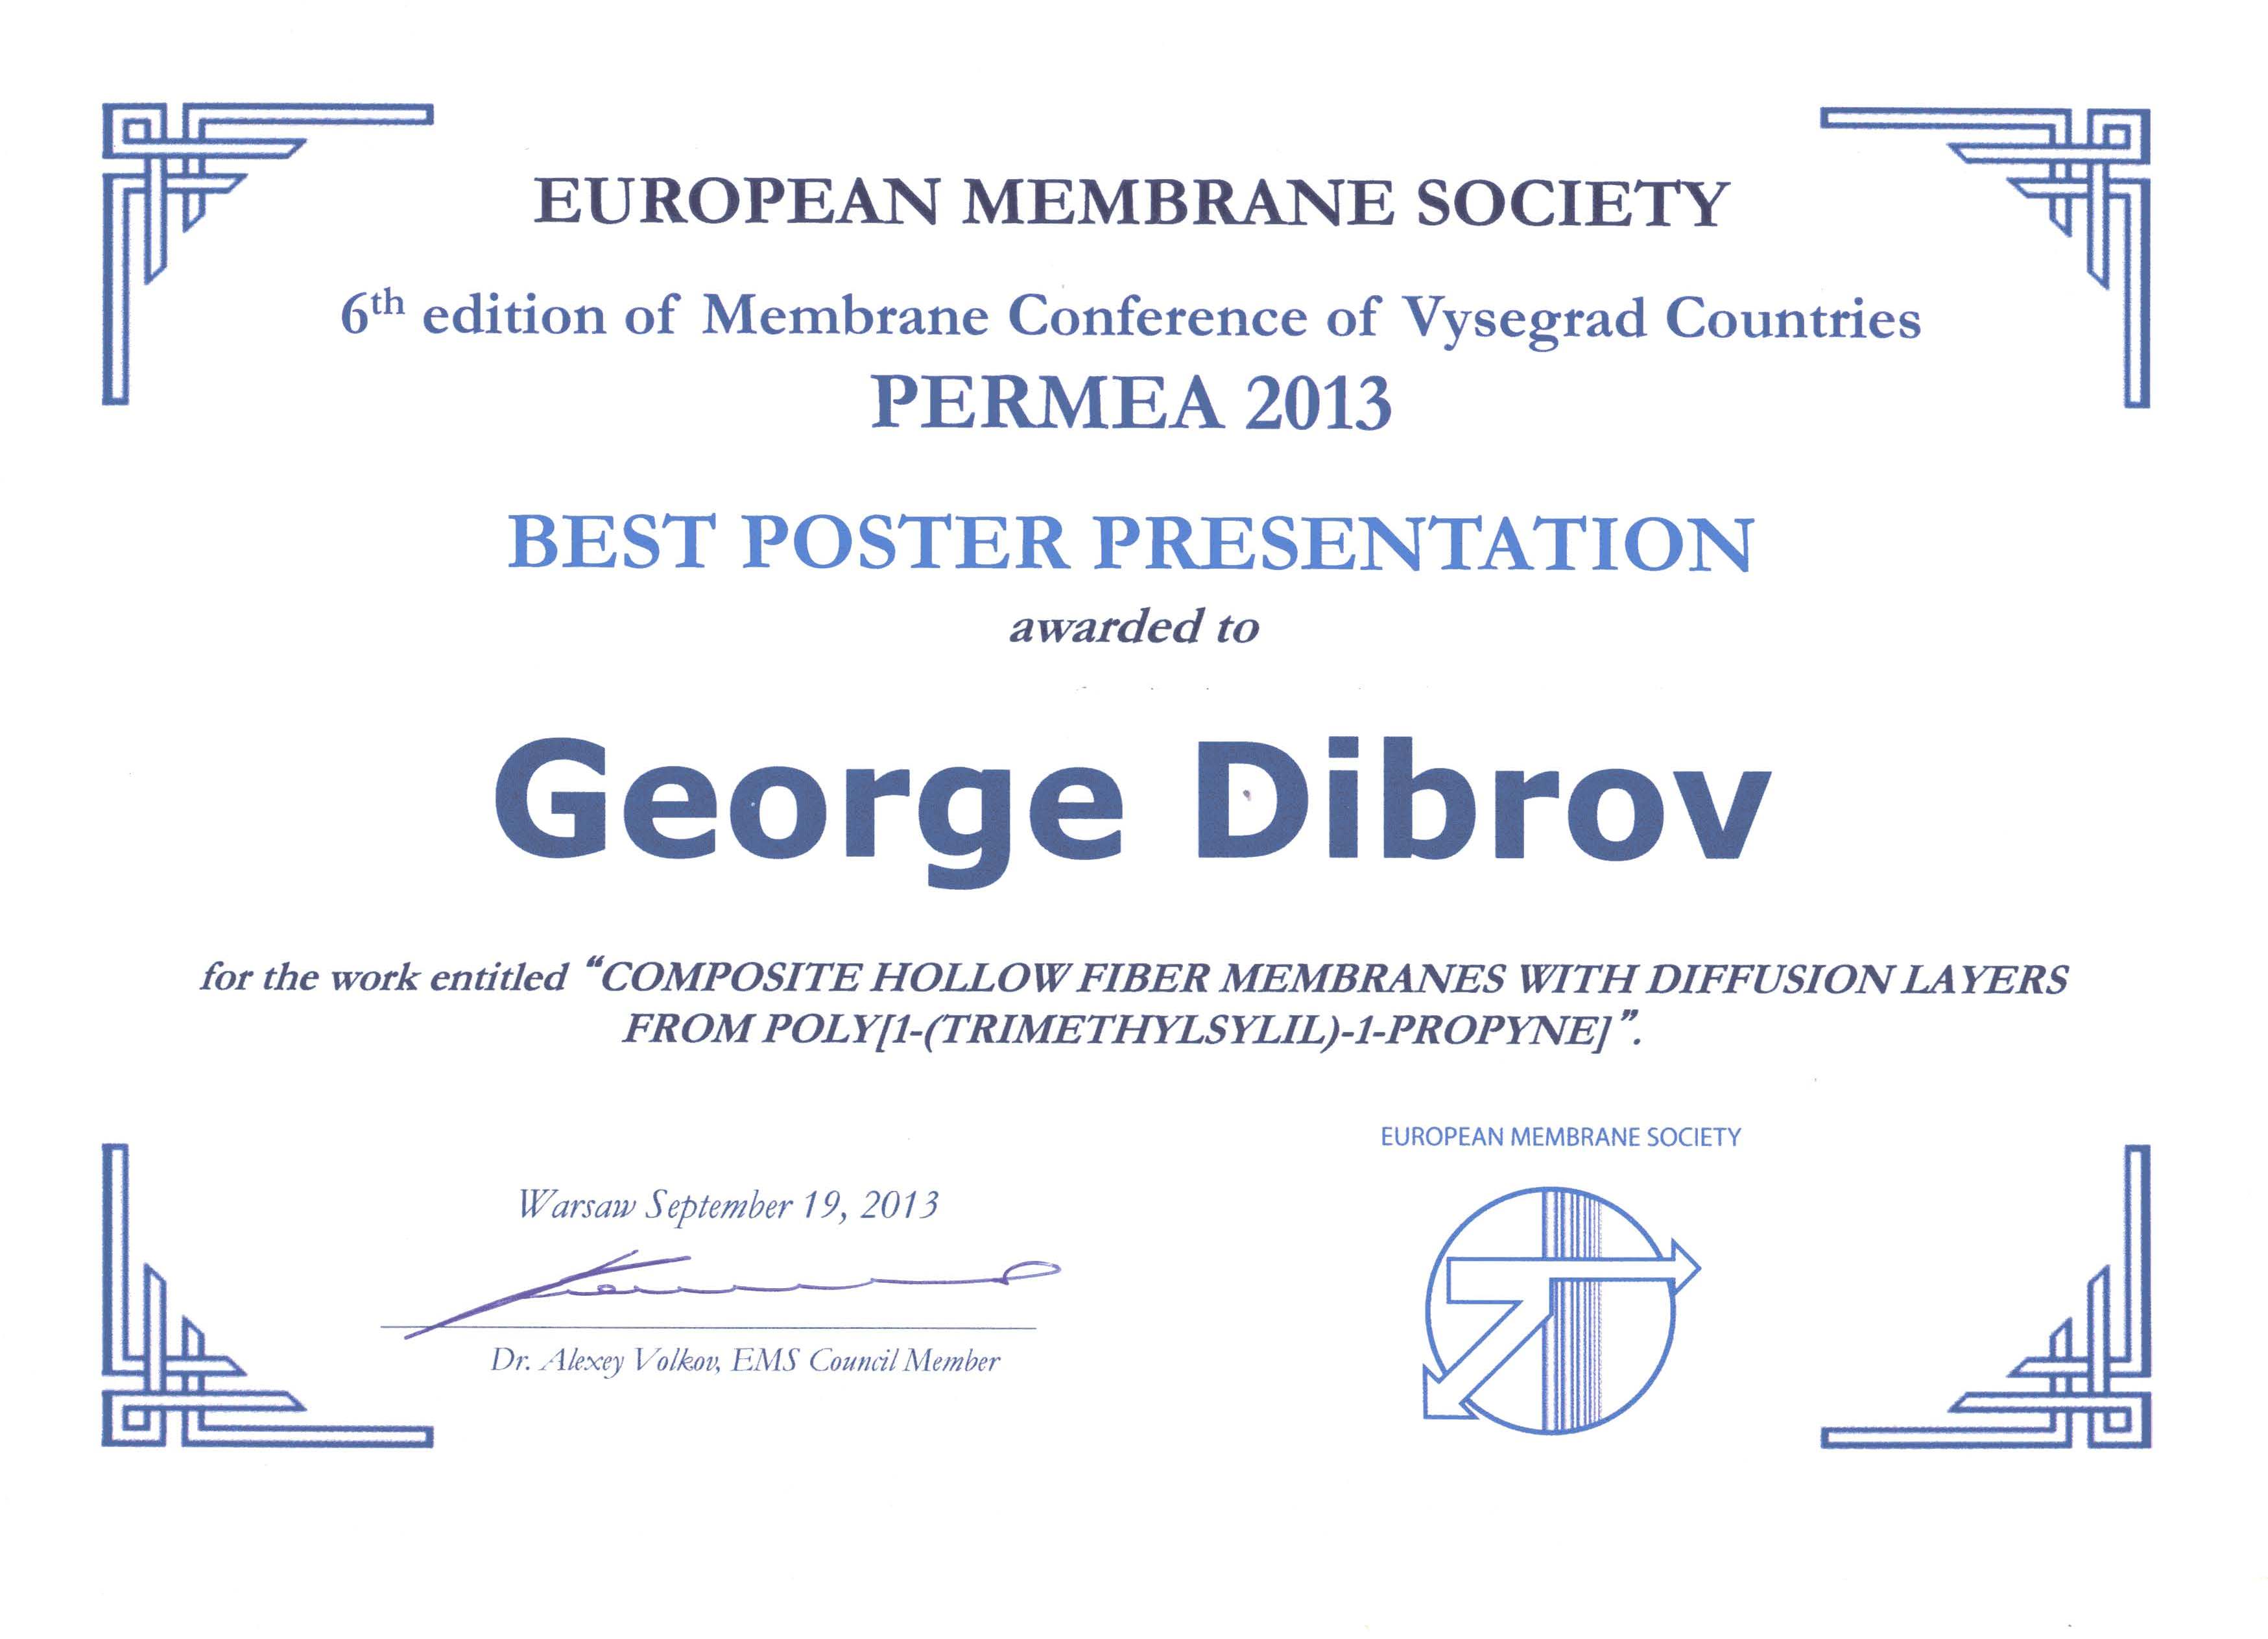 Диплом Диброву Г.А. за лучший стендовый доклад в конкурсе-олимпиаде молодых исследователей организованной Европейским Мембранным Сообществом и проведенной в рамках конференции «Permea2013»